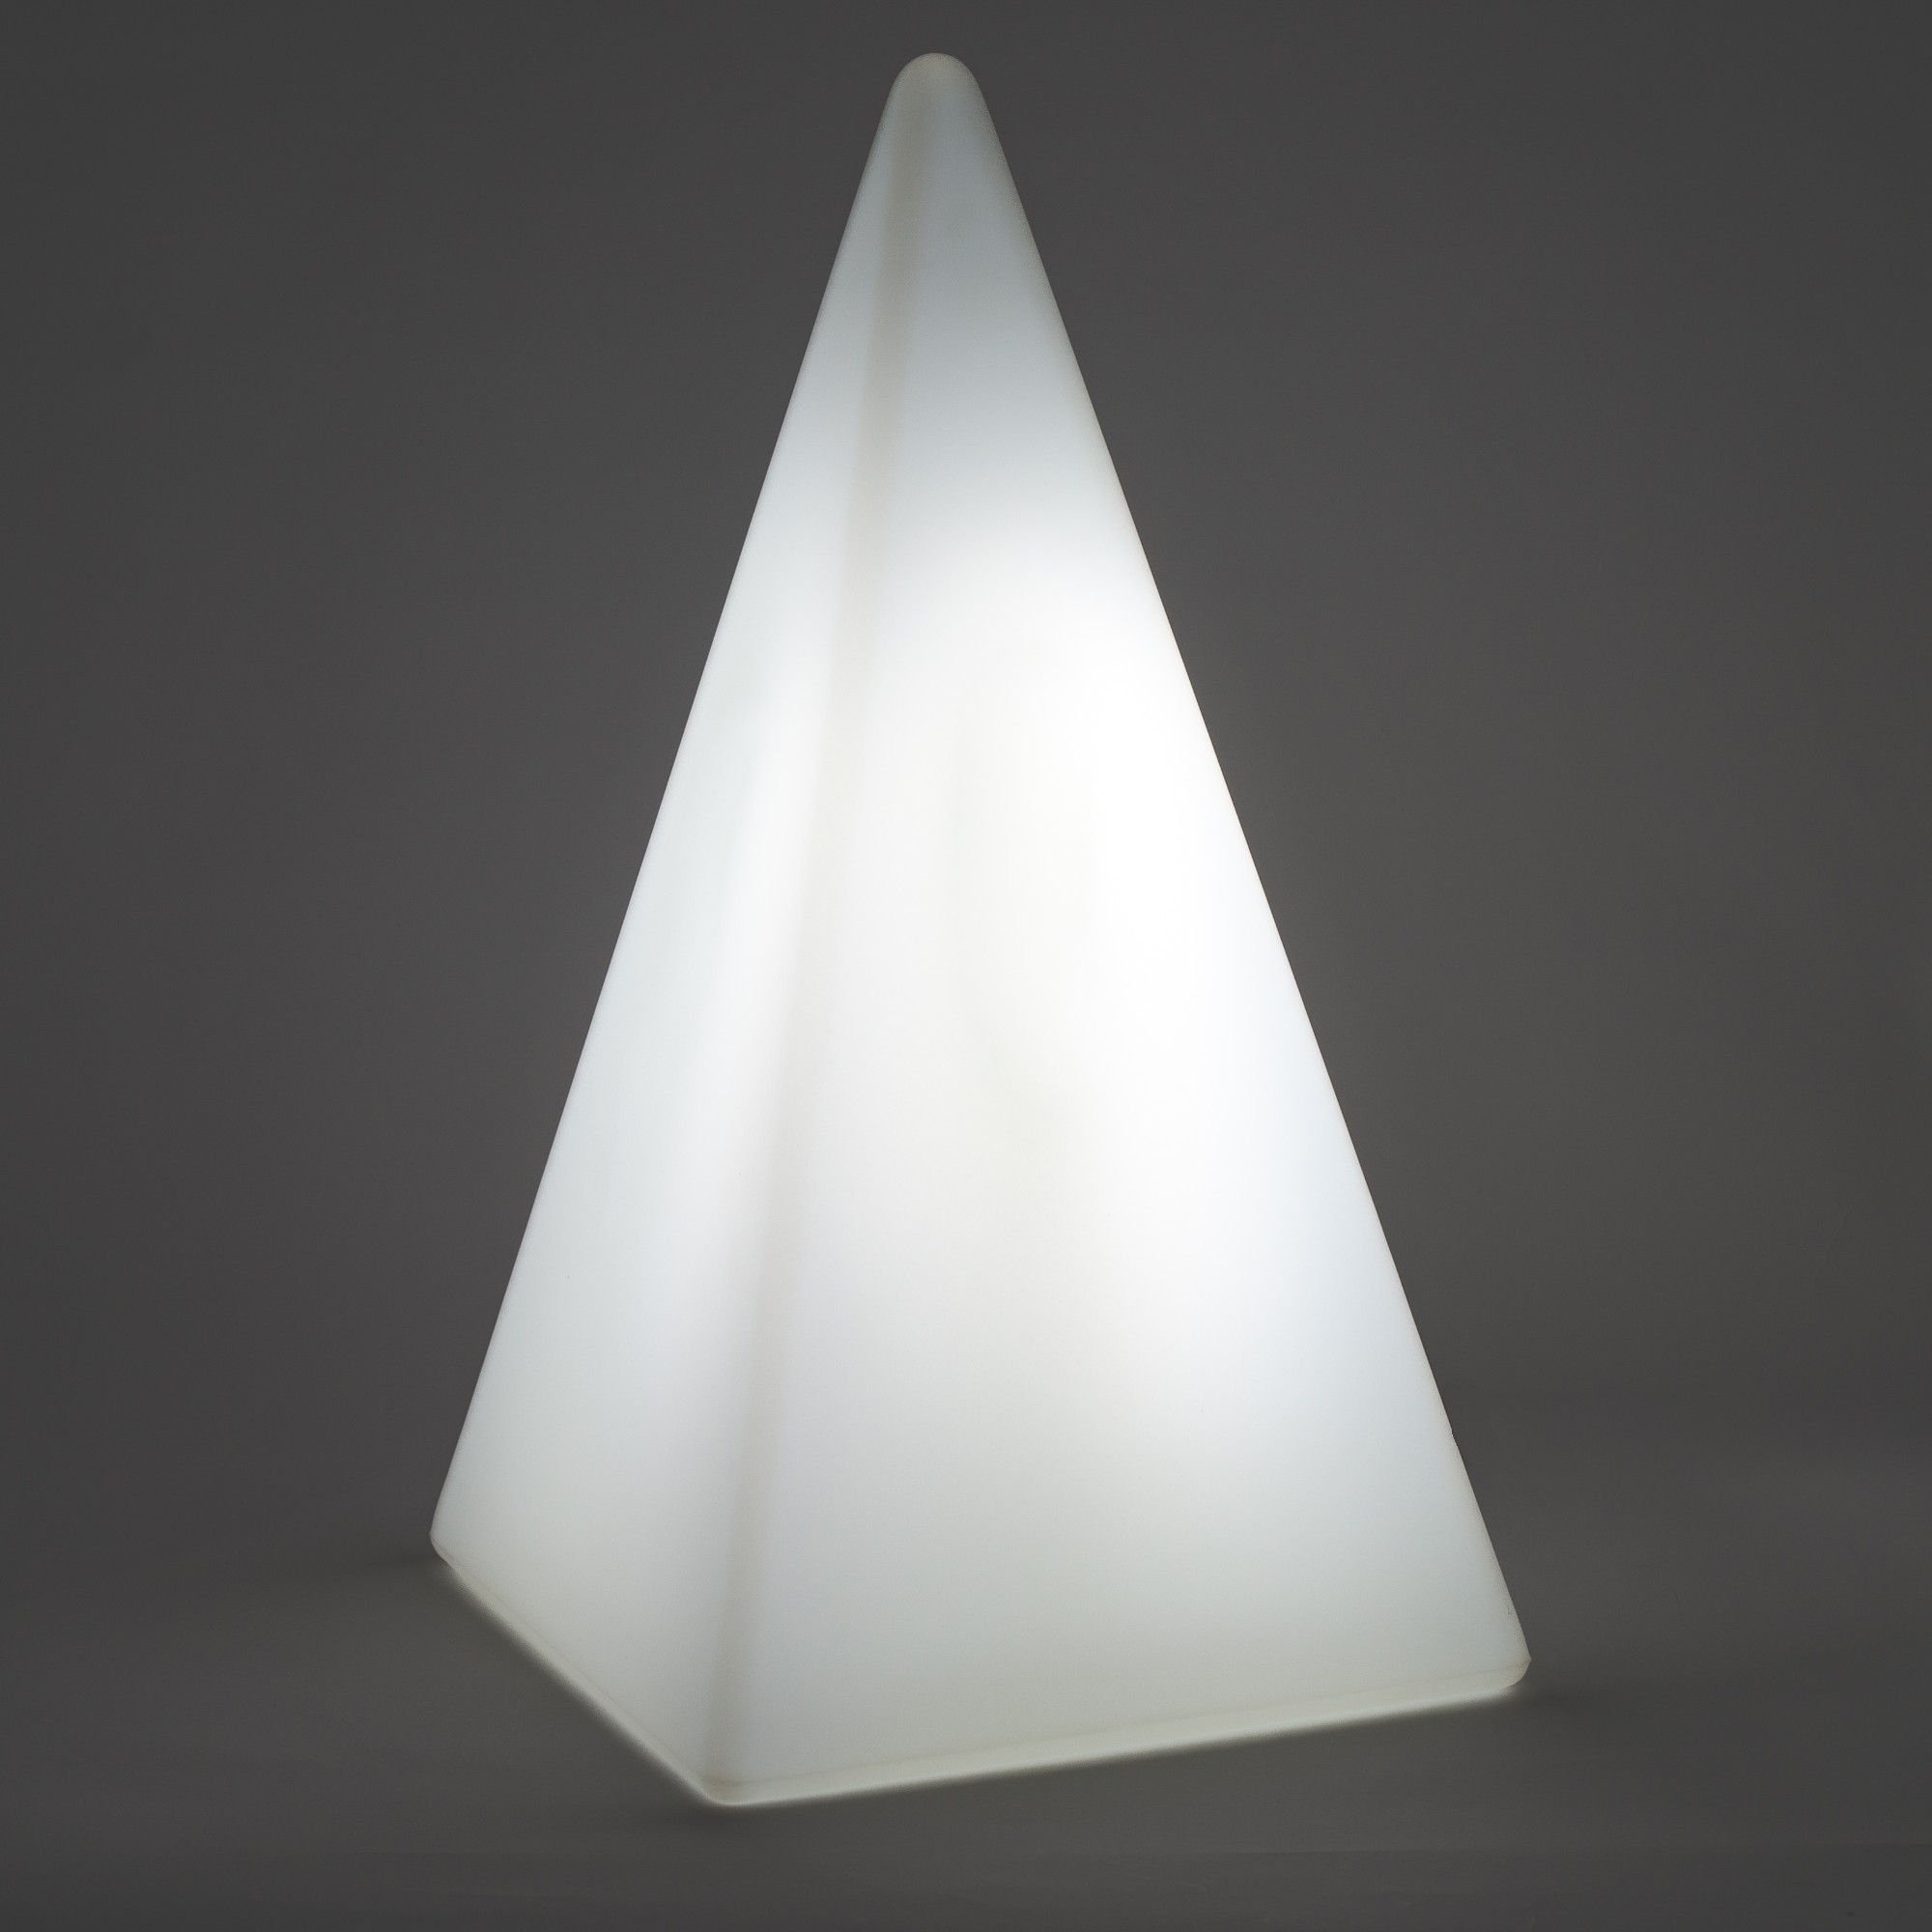 70103 Standleuchte Pyramide 36 cm der Firma EPSTEIN Design Leuchten